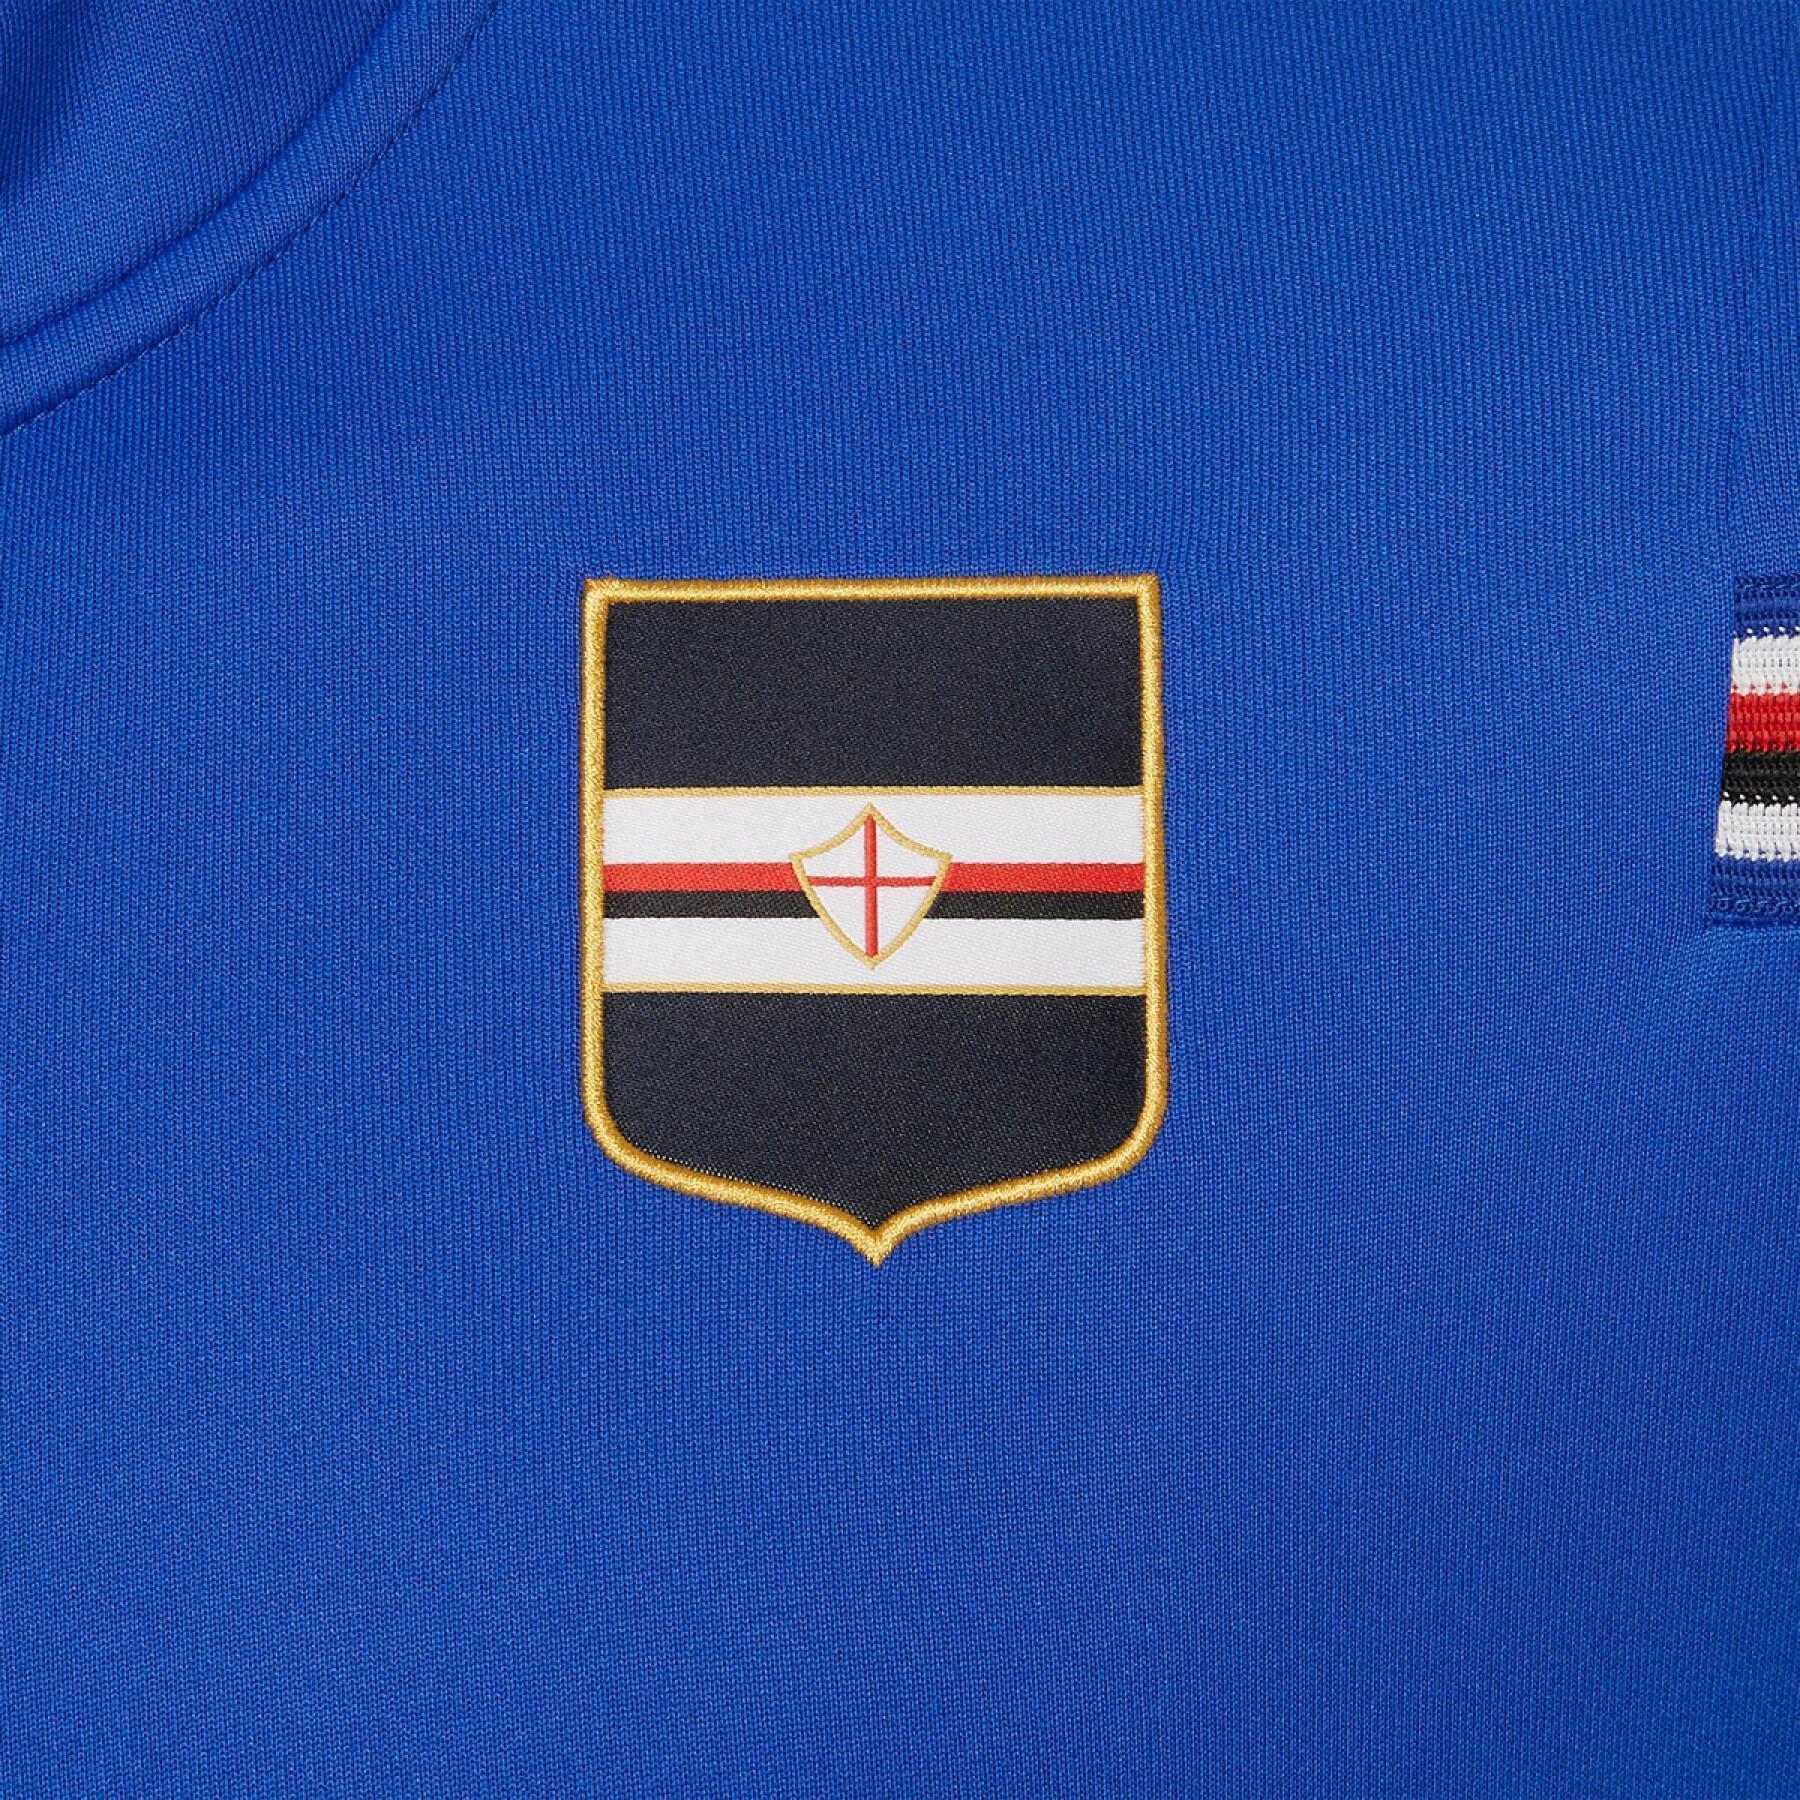 Sweatshirt intégrale UC Sampdoria 2020/21